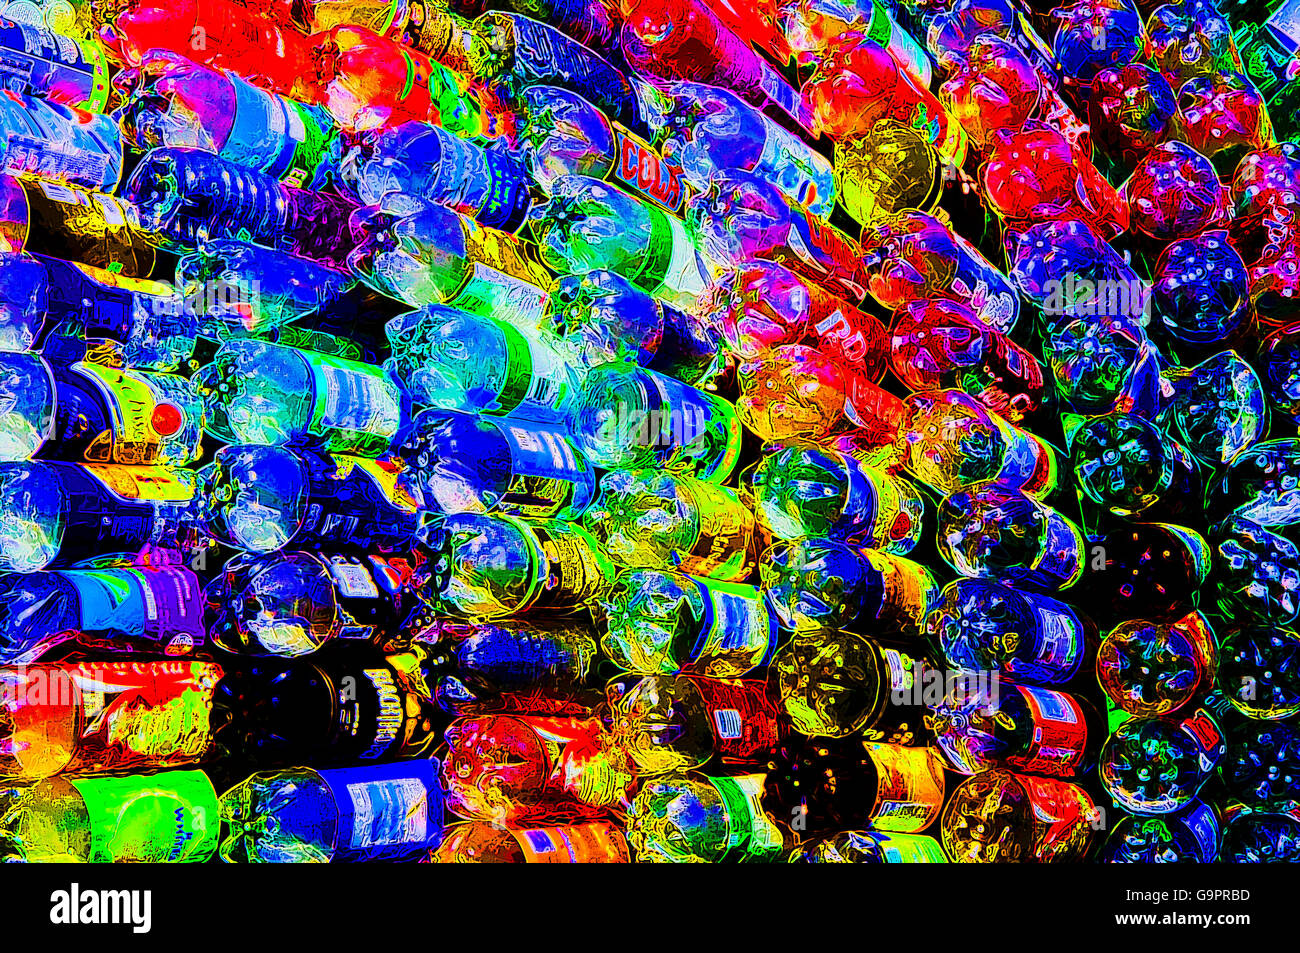 Vivida immagine astratta di una moderna arte scultura realizzata da bottiglie di plastica riciclate Foto Stock